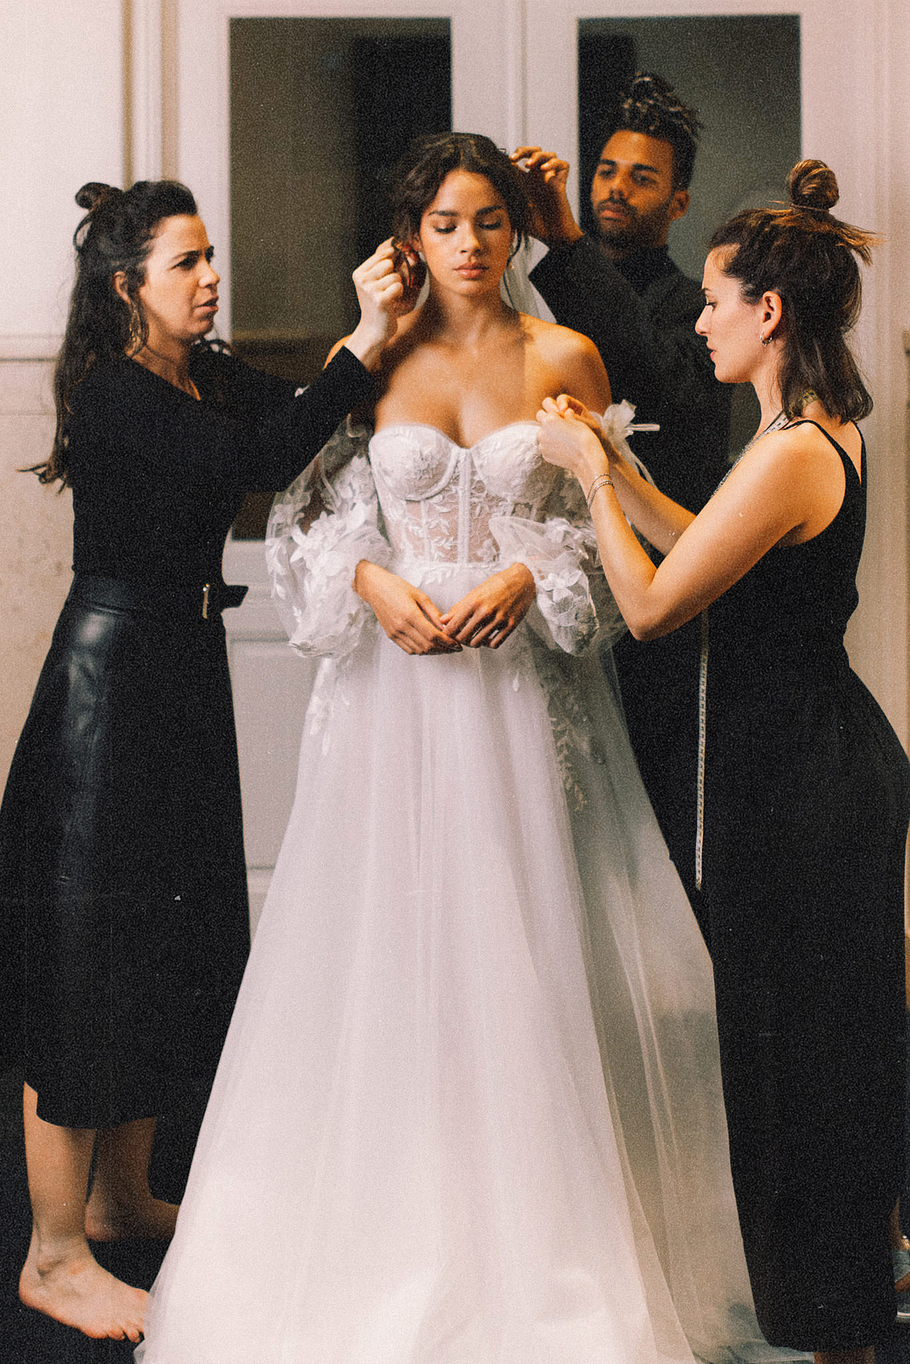 SYM_1822-grain-2x3-bride-amsterdam-makeup-wedding